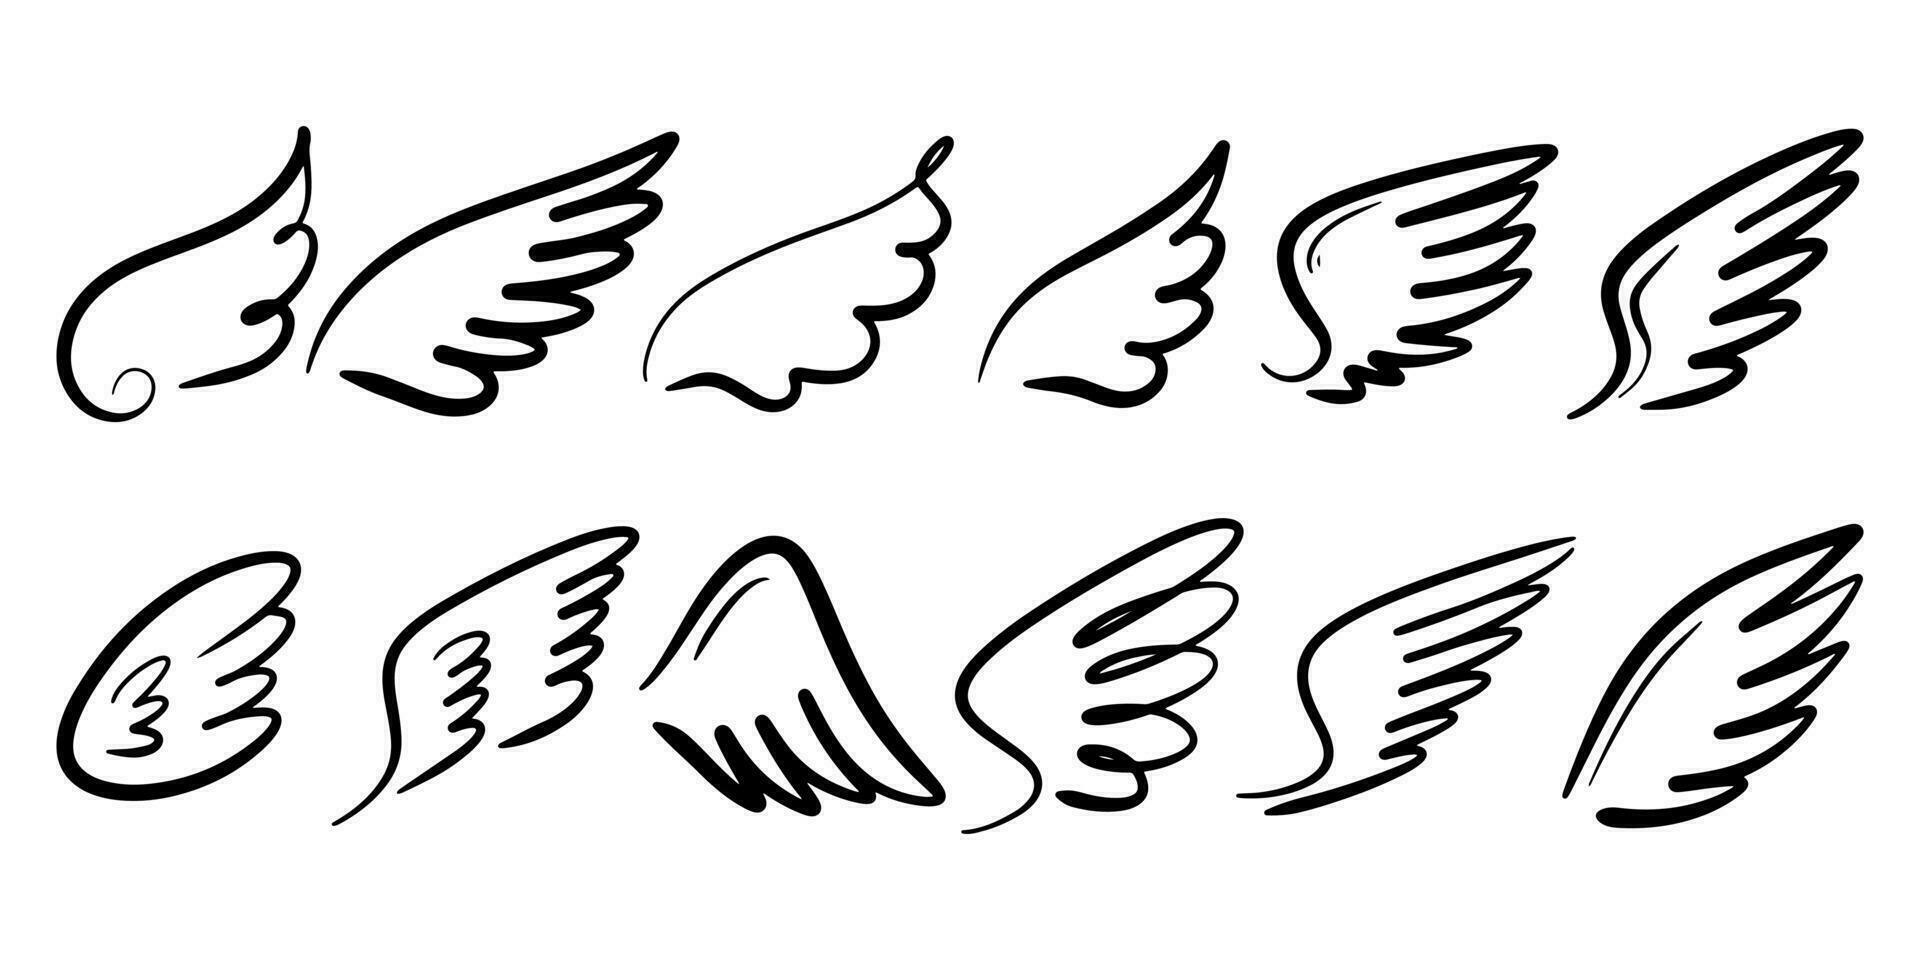 Gekritzelskizzenart der abstrakten Flügelkarikaturhand gezeichnete Illustration für Konzeptdesign. vektor